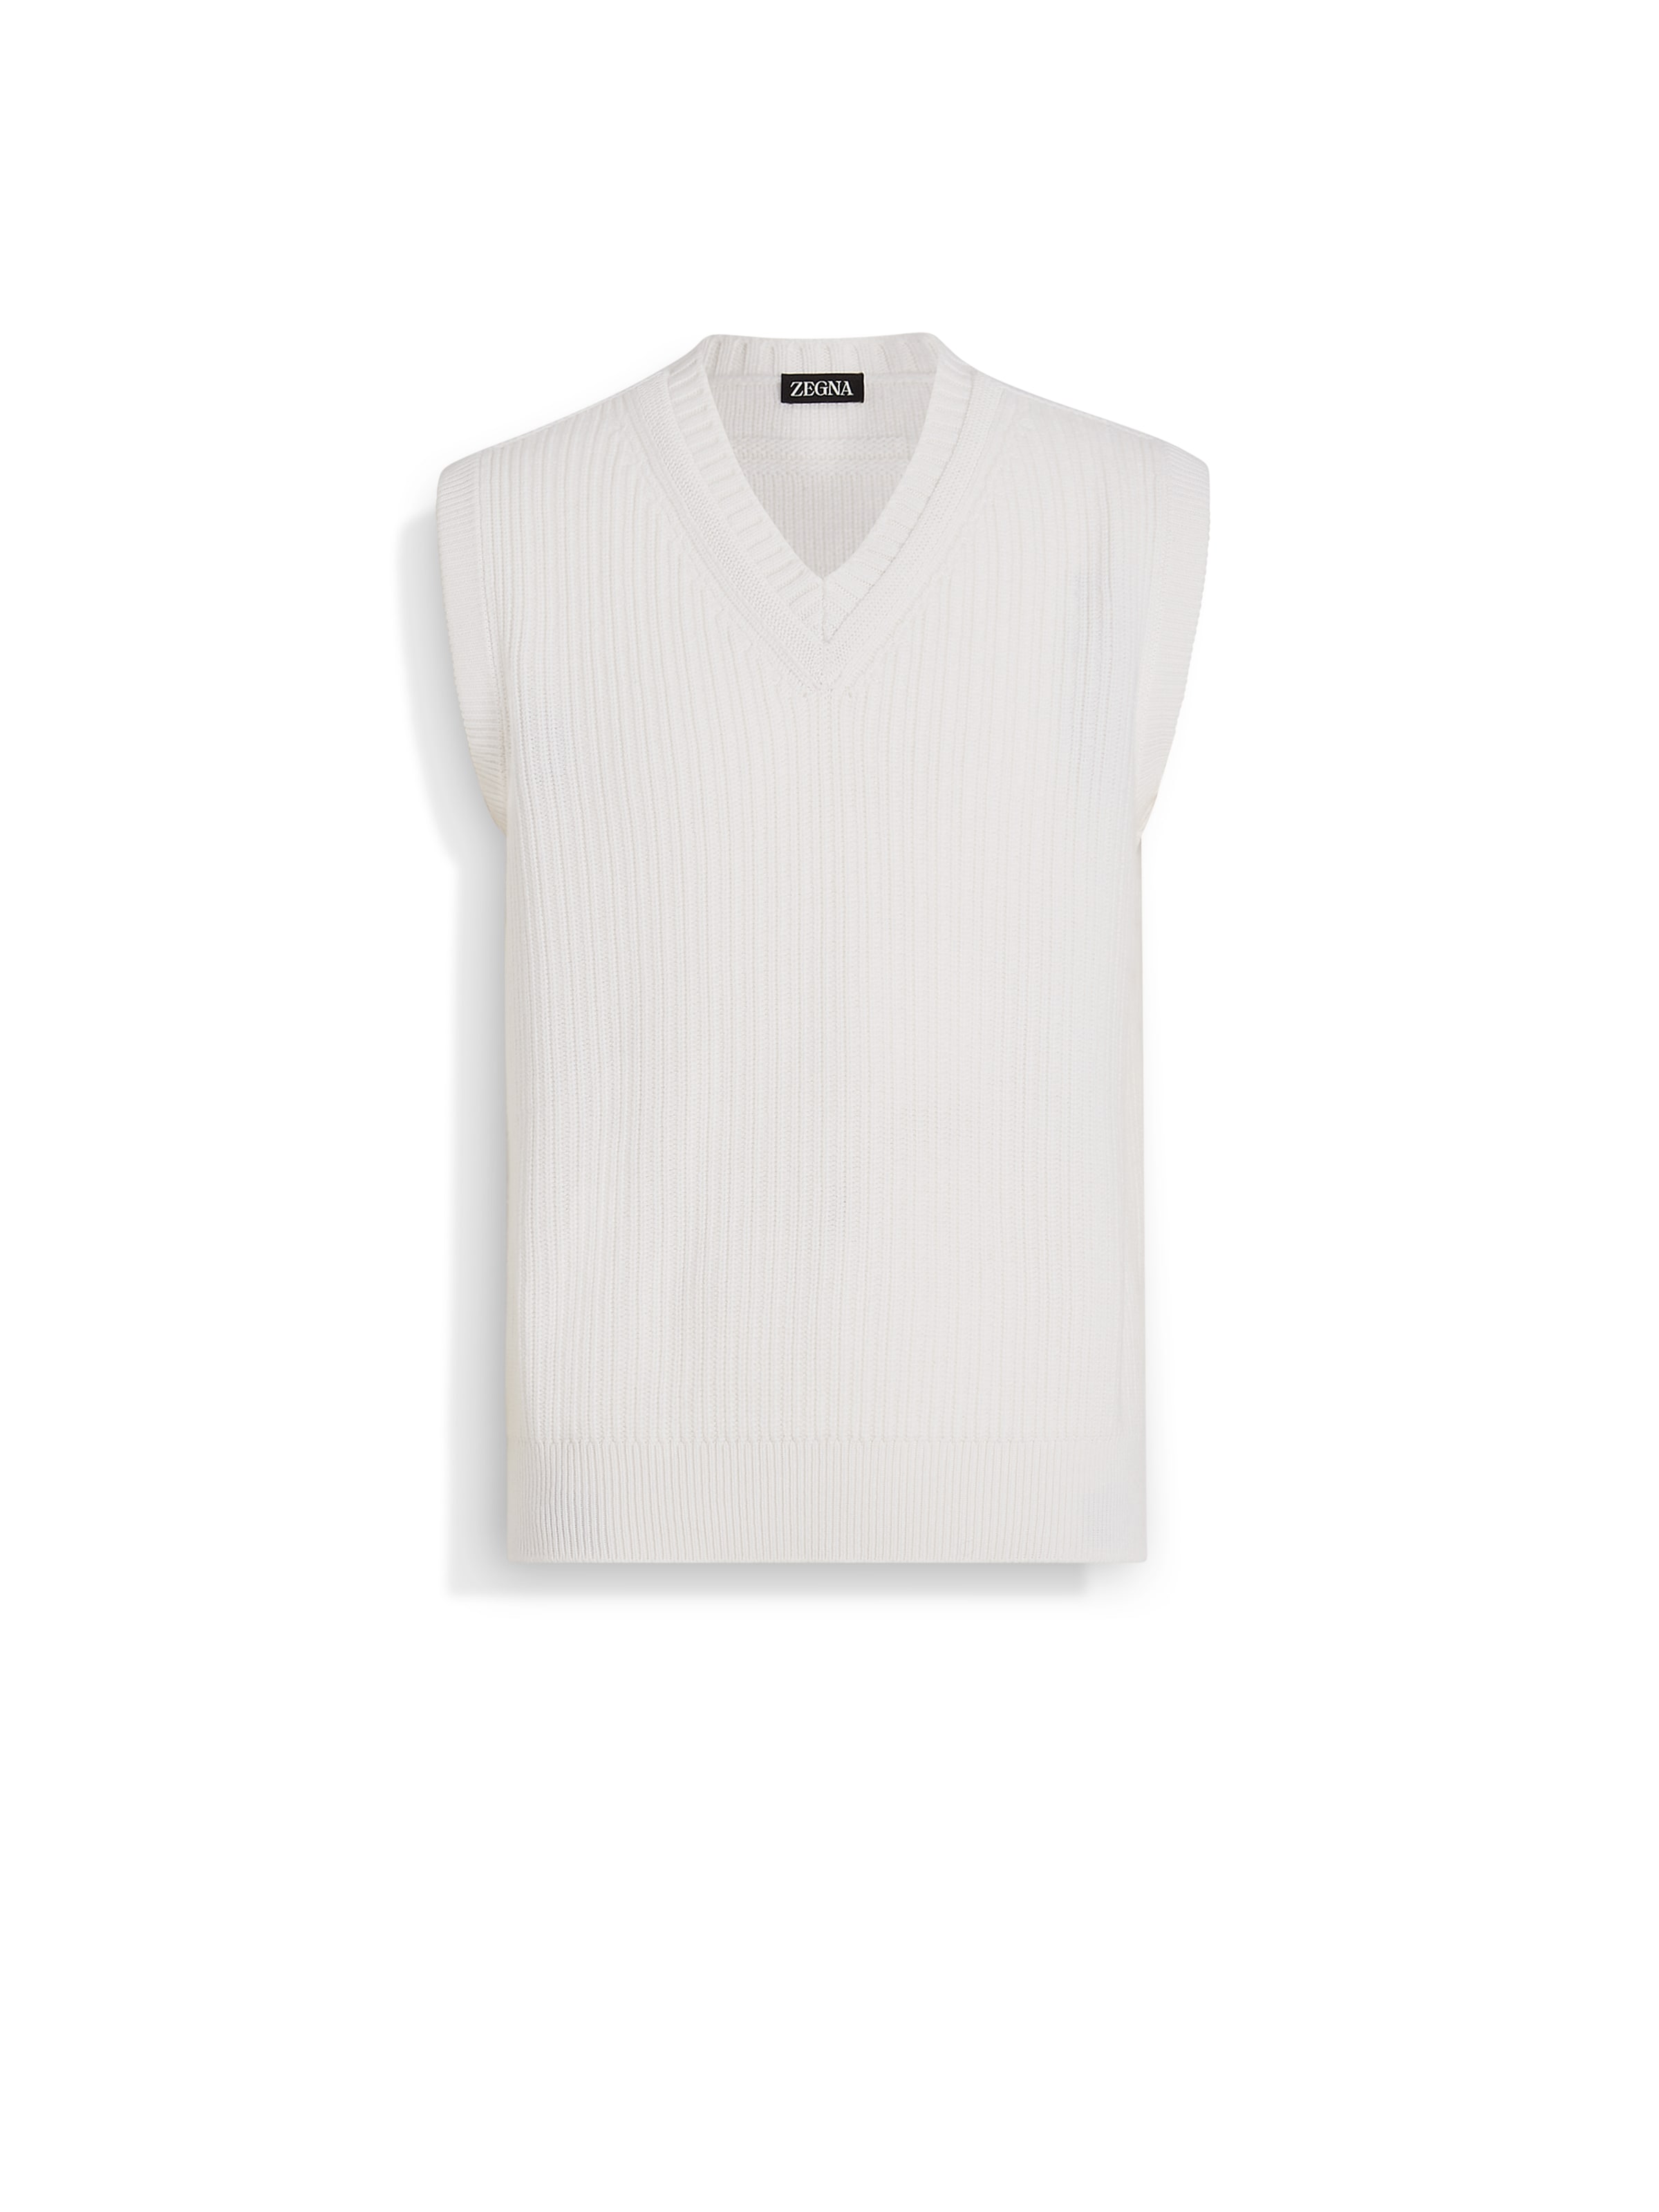 Zegna White Cashmere And Cotton Vest